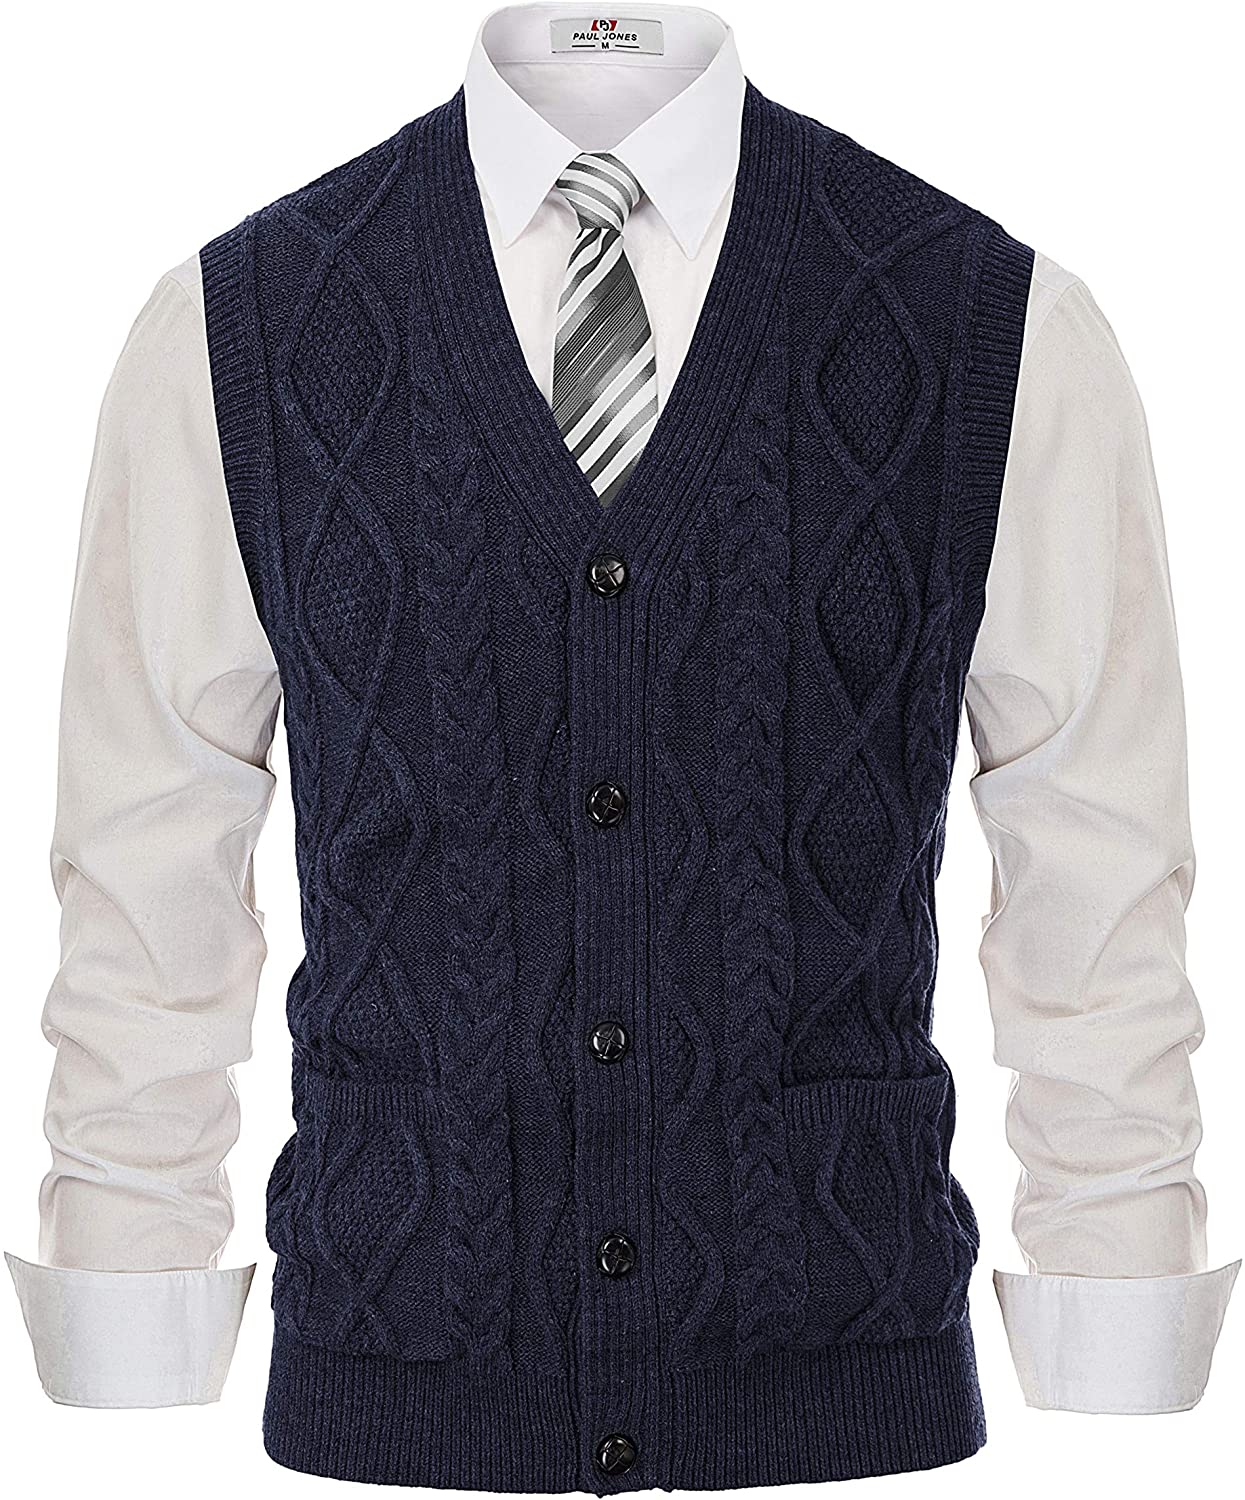 PJ PAUL JONES Men's Sweater Vest V-Neck Sleeveless Cable Knitted